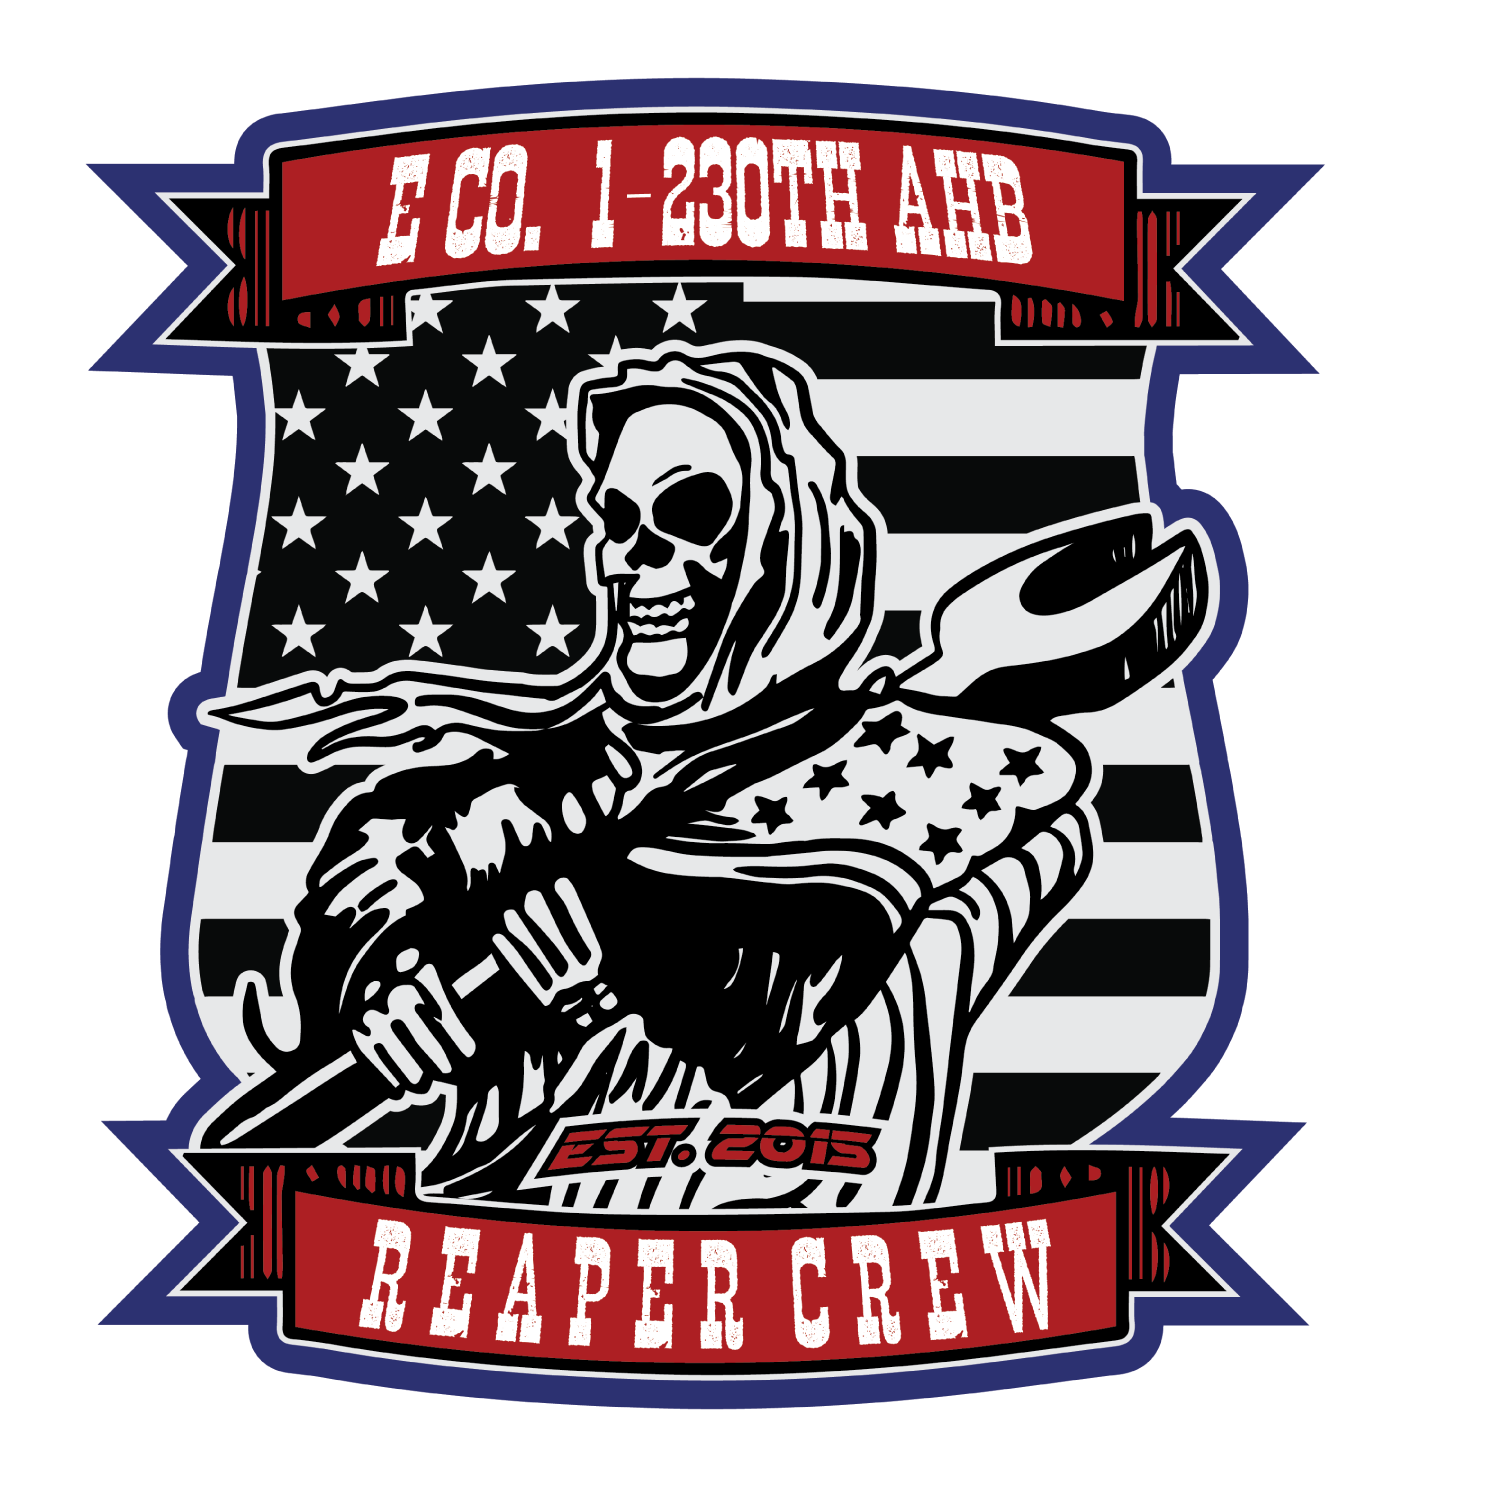 E Co, 1-230th AHB "Reaper Crew"